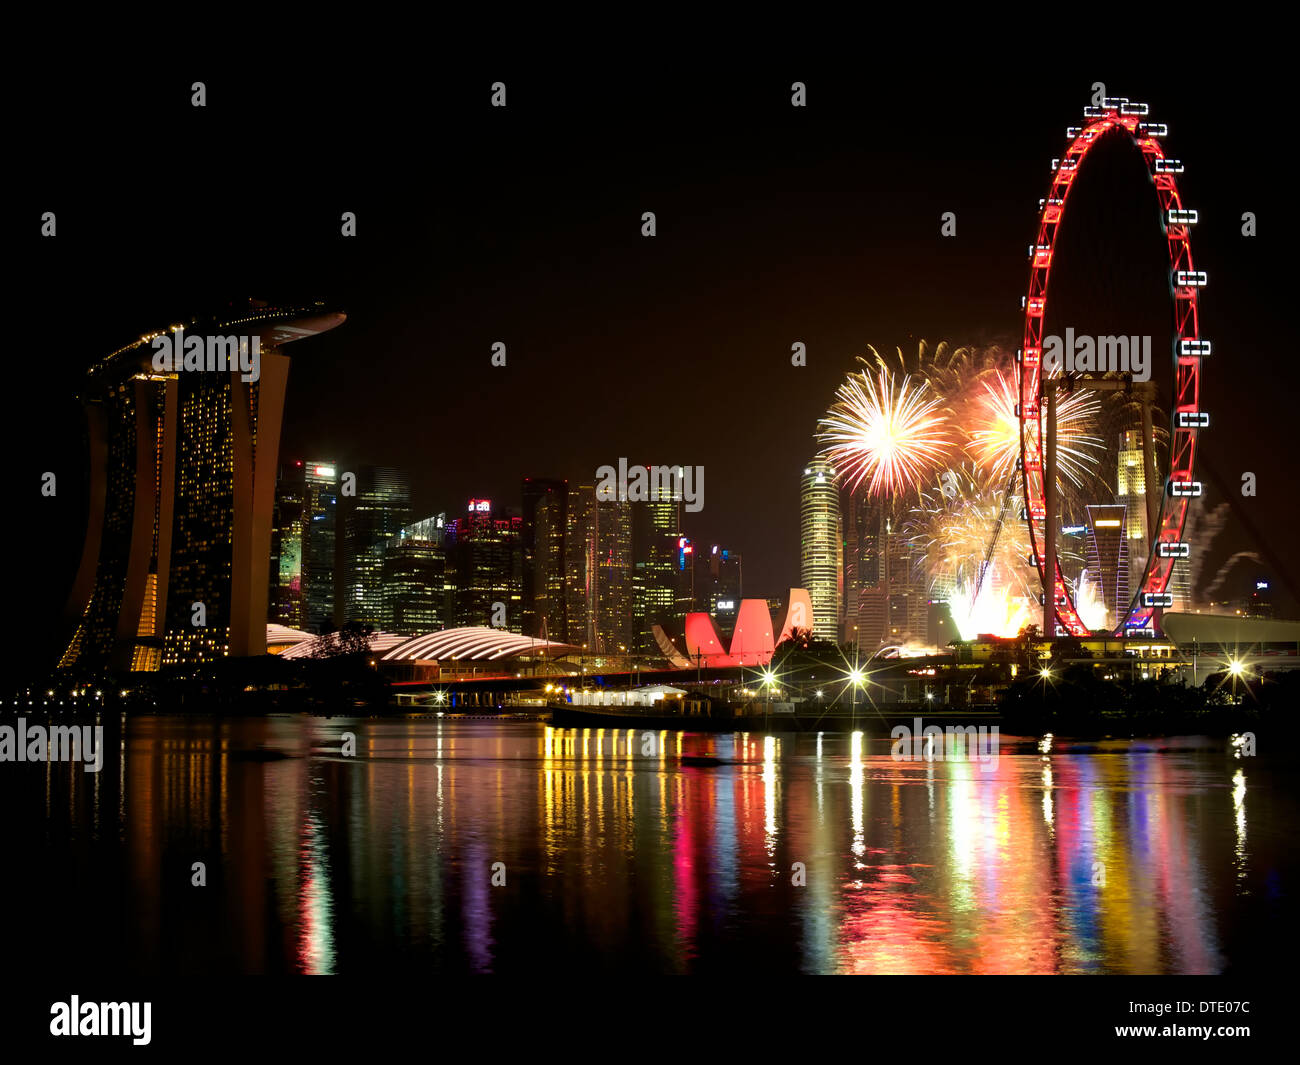 Vue sur la Marina Bay area de Bay East Garden au cours de la Fête Nationale de Singapour avec d'artifice Banque D'Images